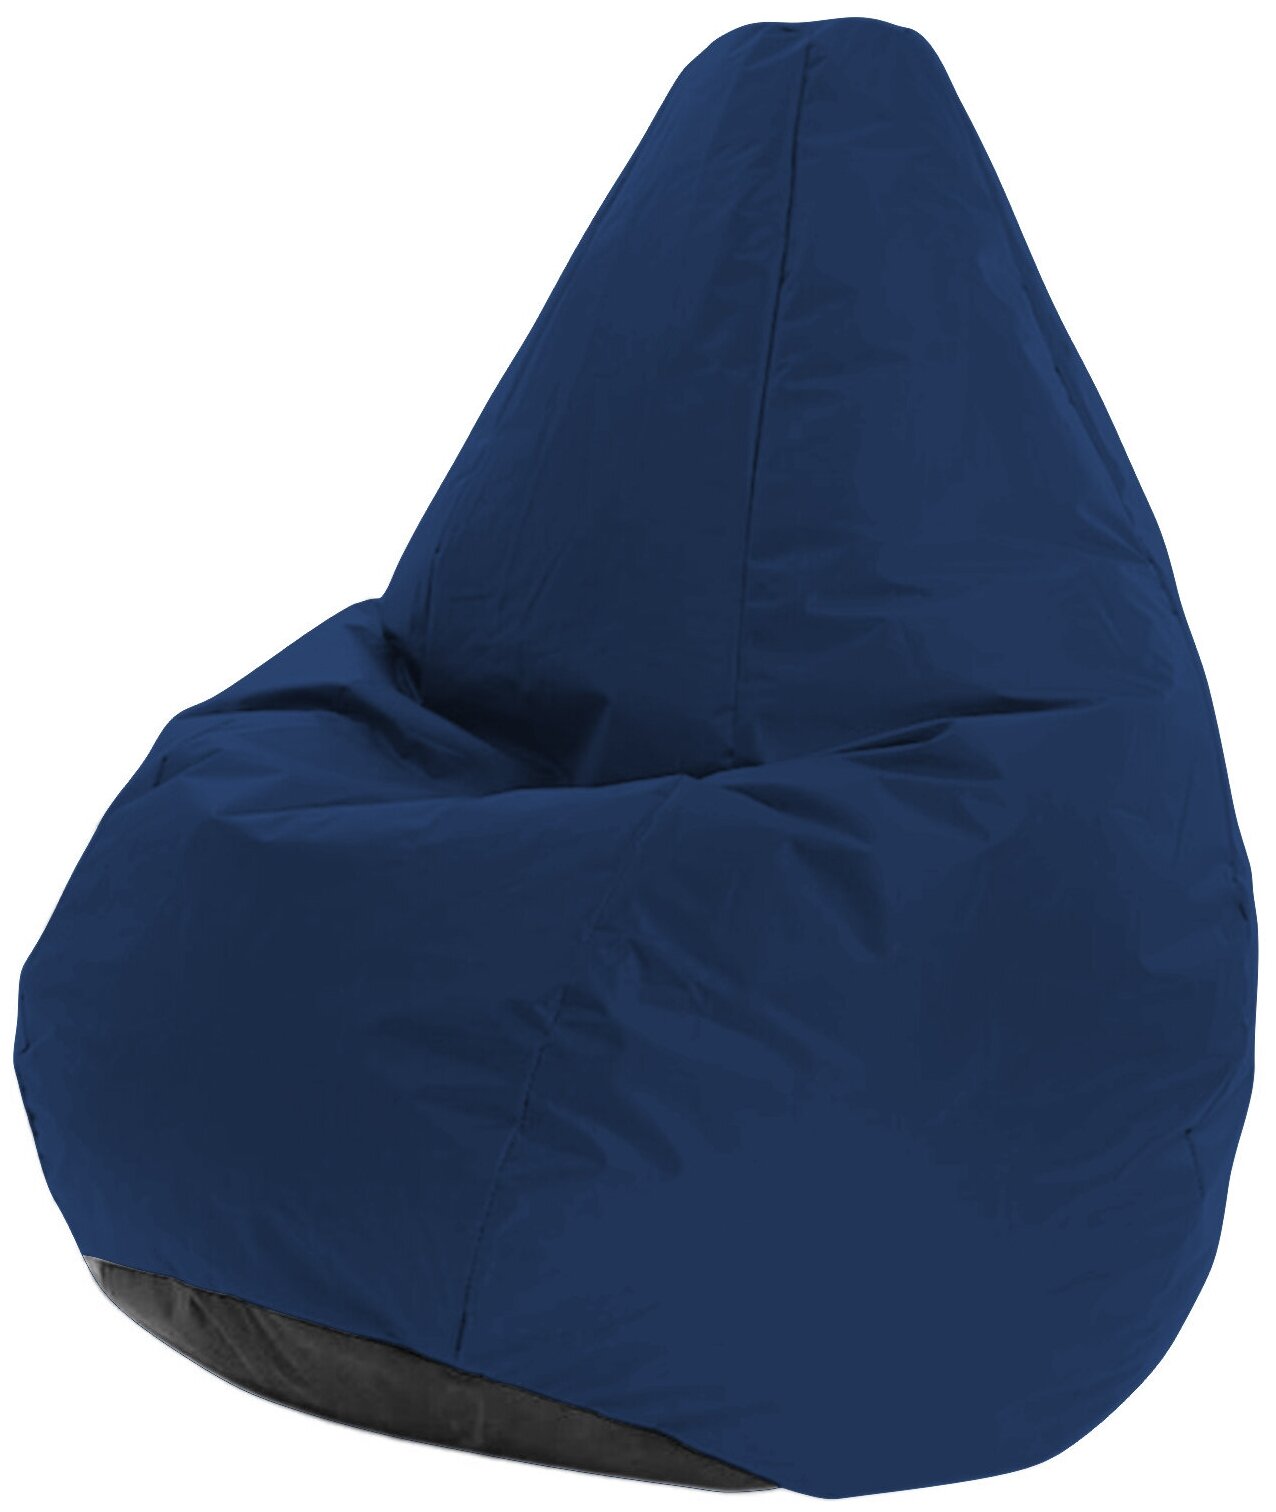 Кресло-мешок, Бескаркасный пуф груша, Ibag, Оксфорд, Размер XXL, цвет "venedic 227 "Синий"